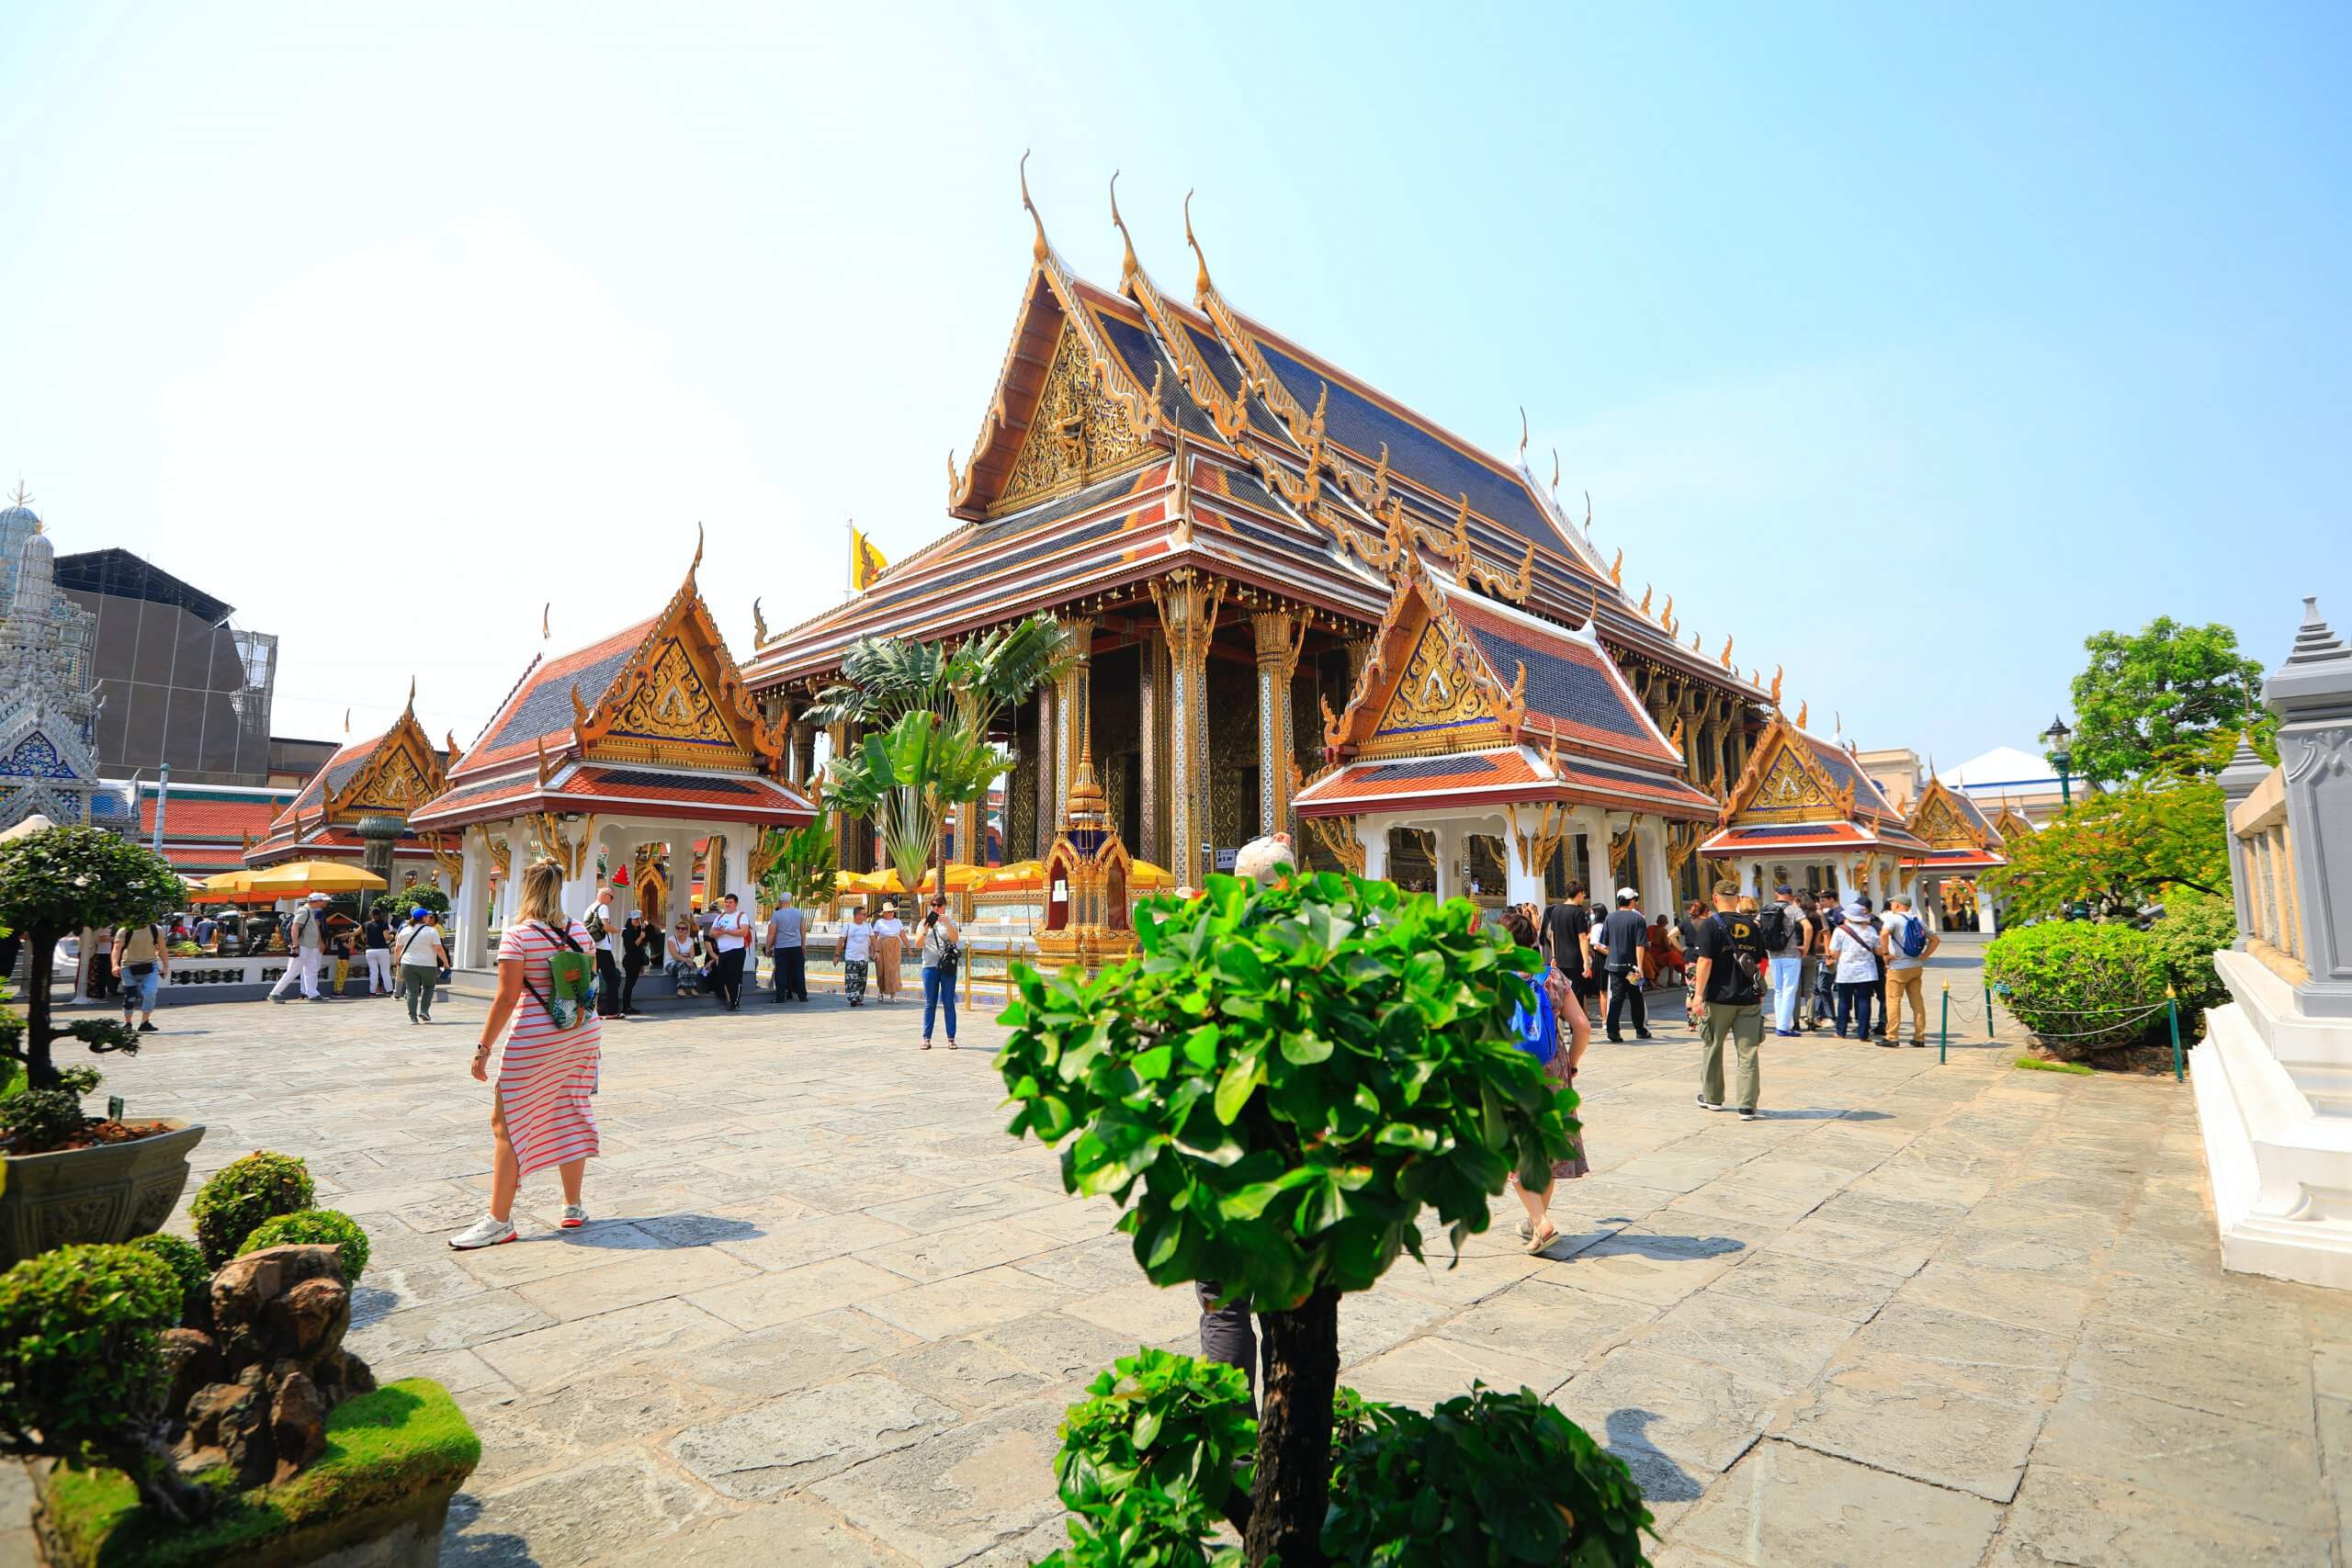 bangkok palace tours